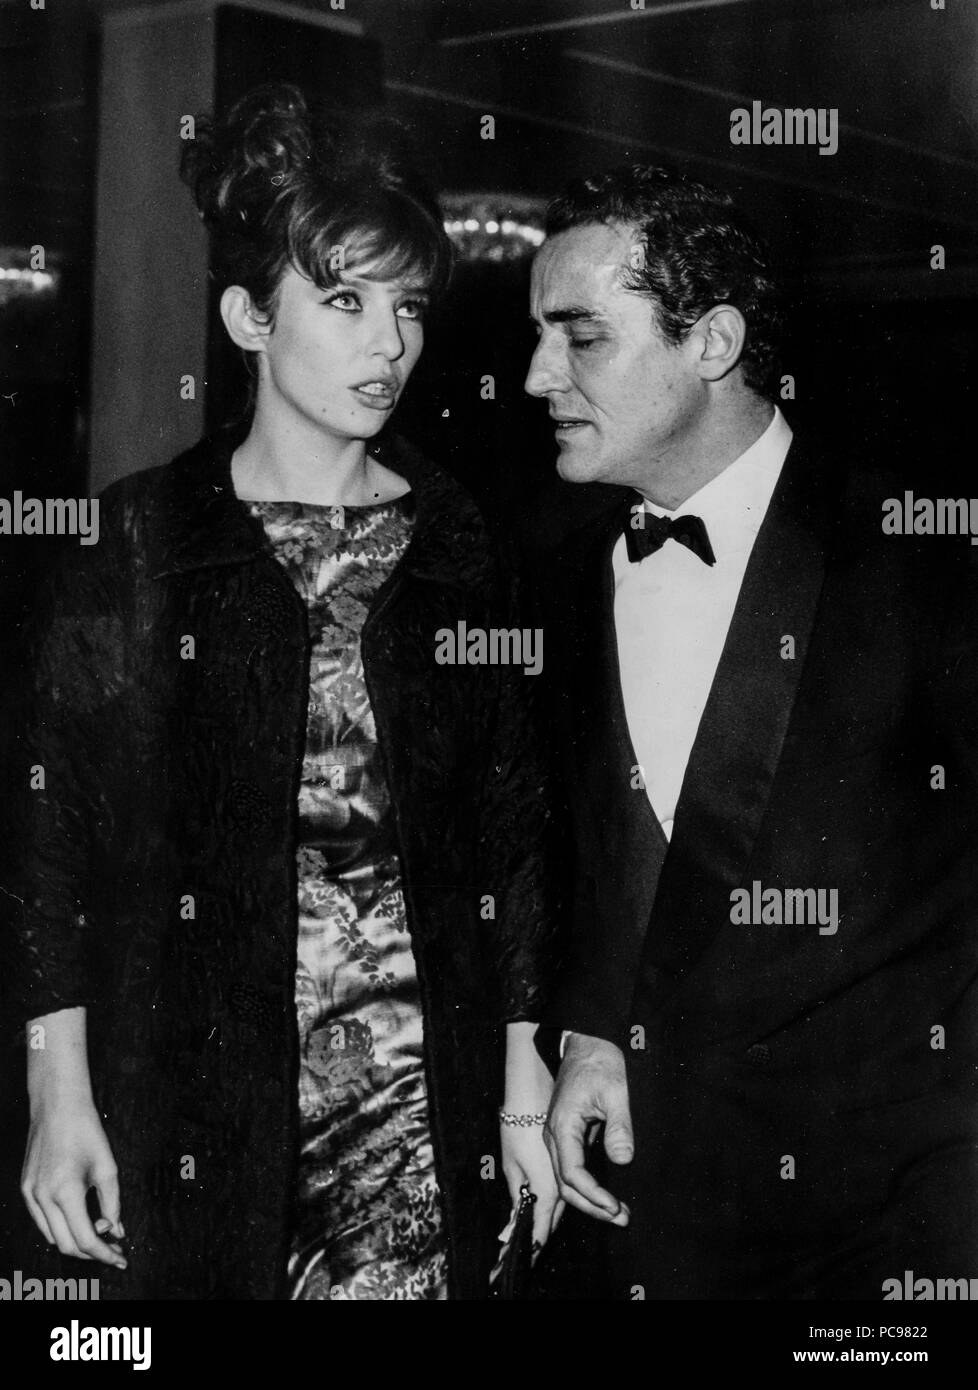 Vittorio Gassman, Annette stroyberg, 1961 Foto de stock